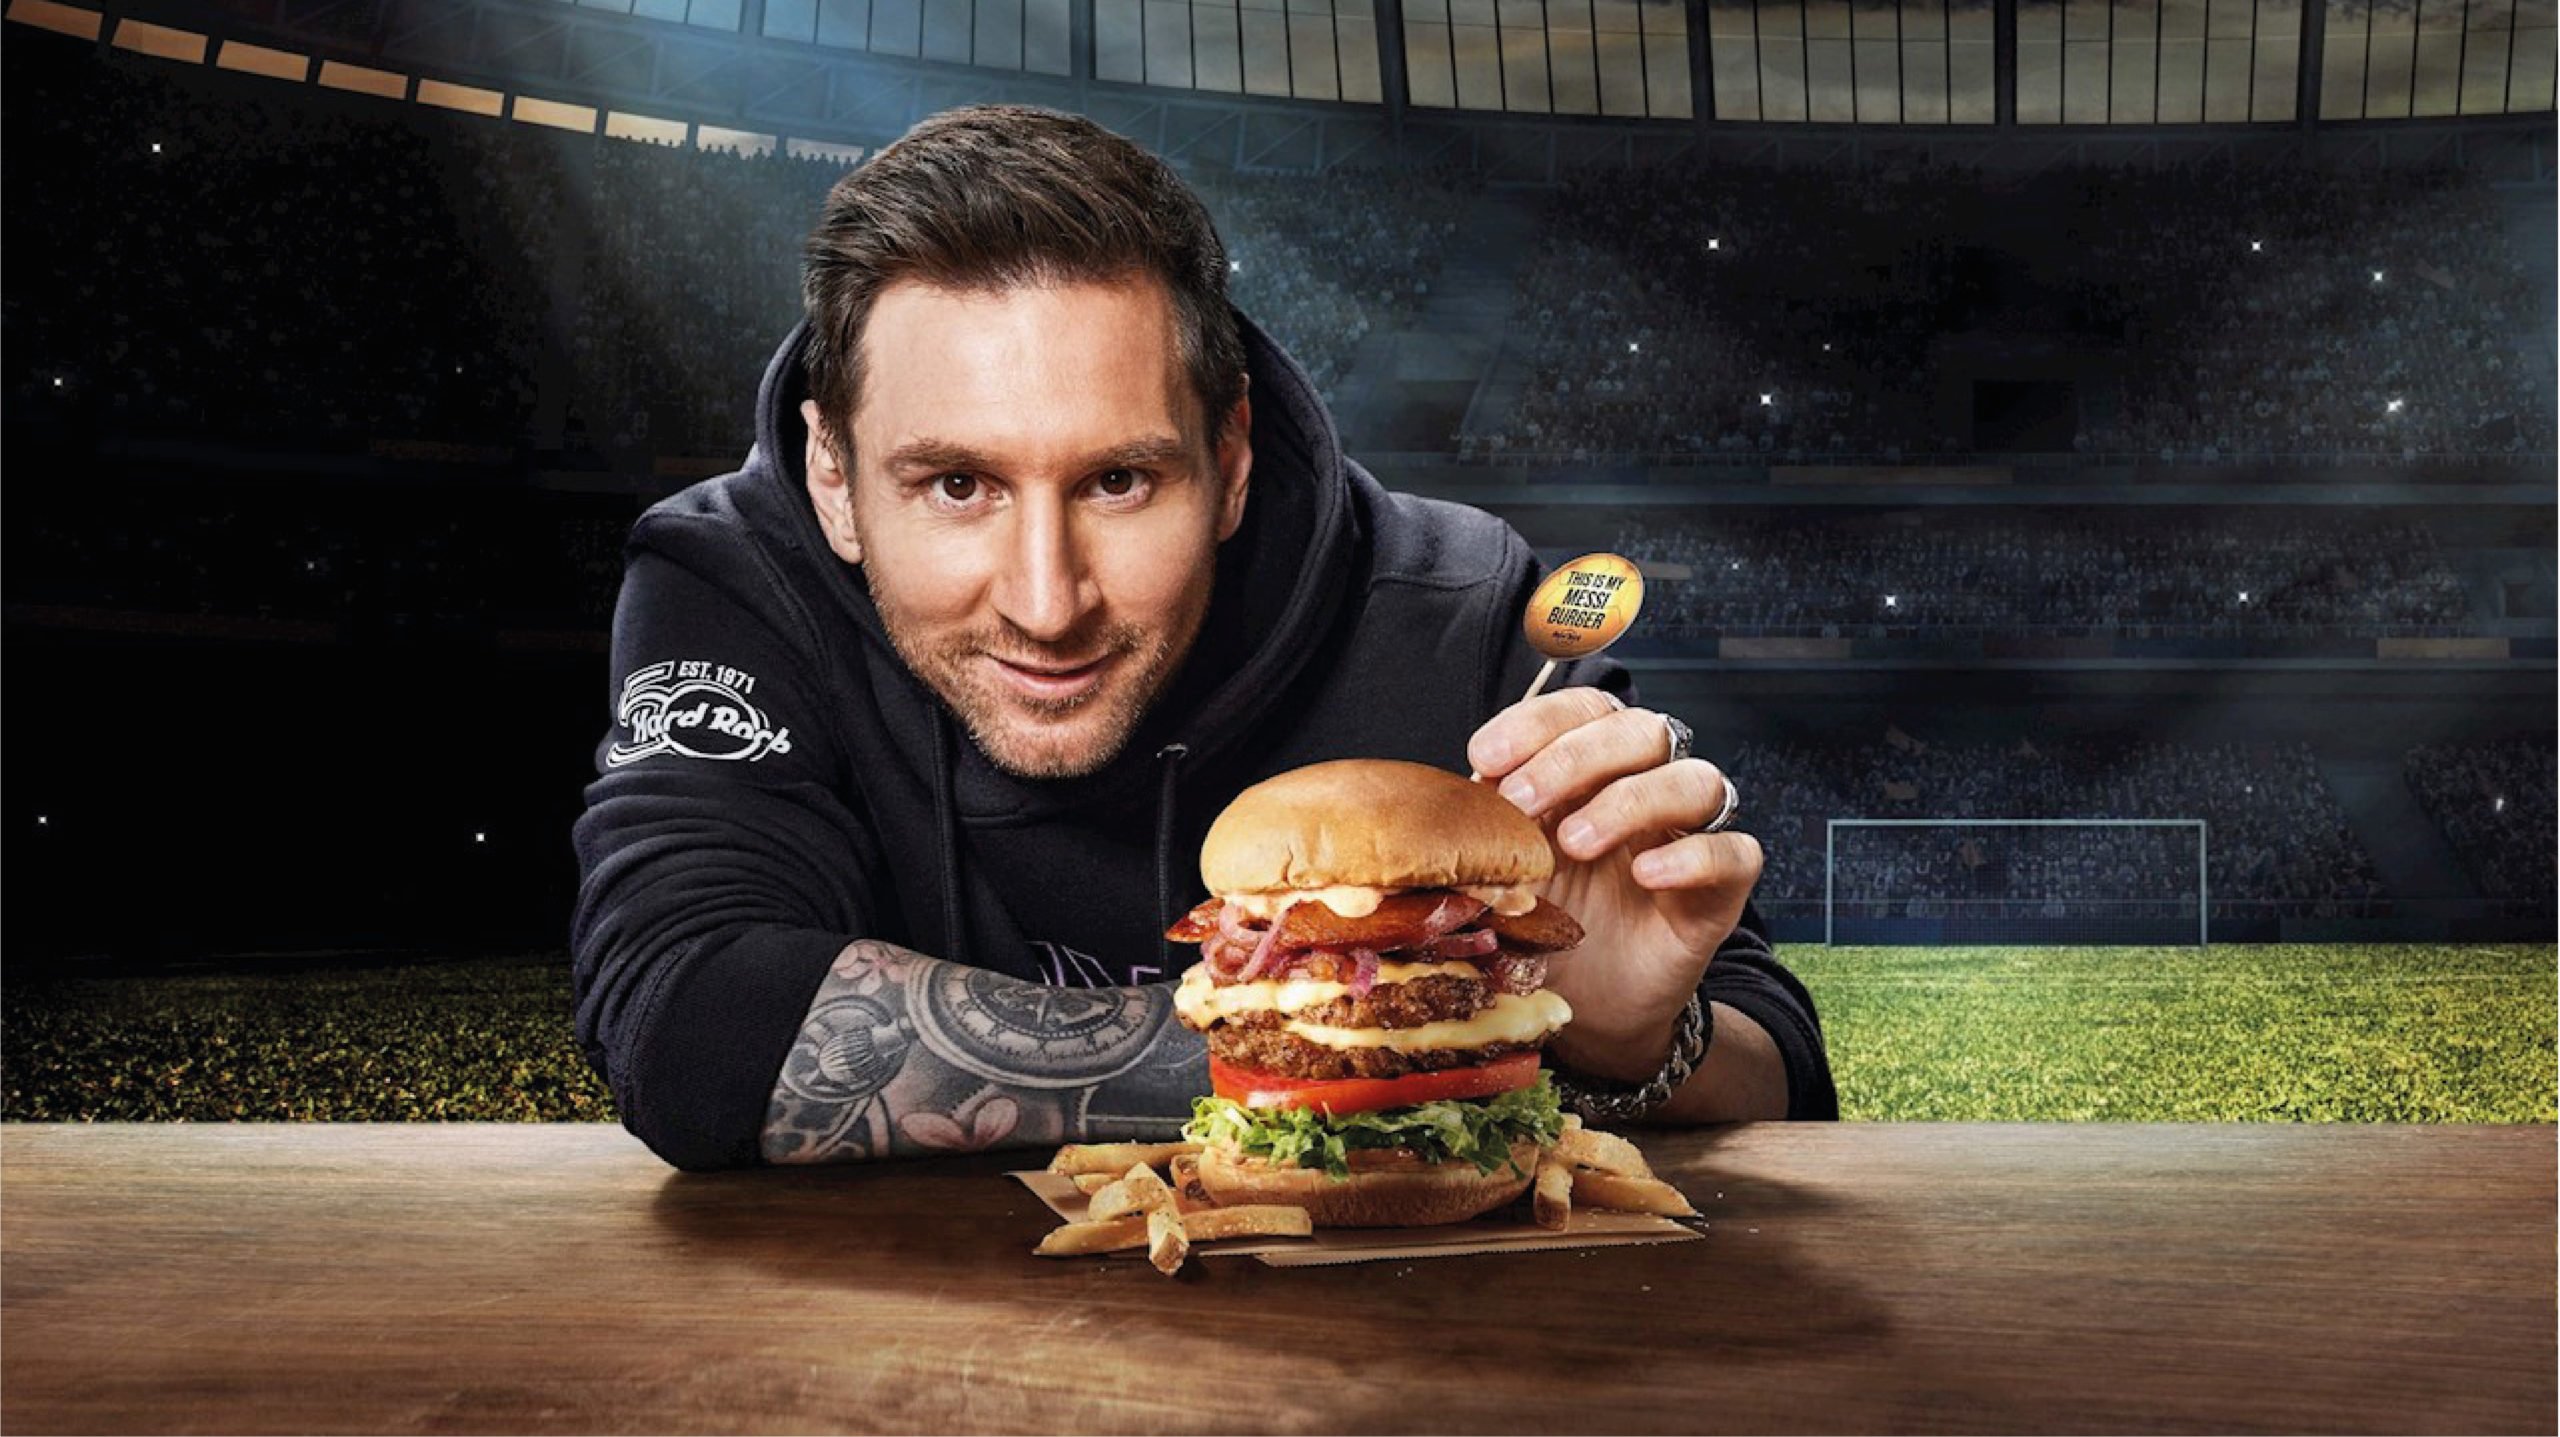 Como Discriminatorio Son Messi' estará en el menú de una cadena de restaurantes a partir de marzo